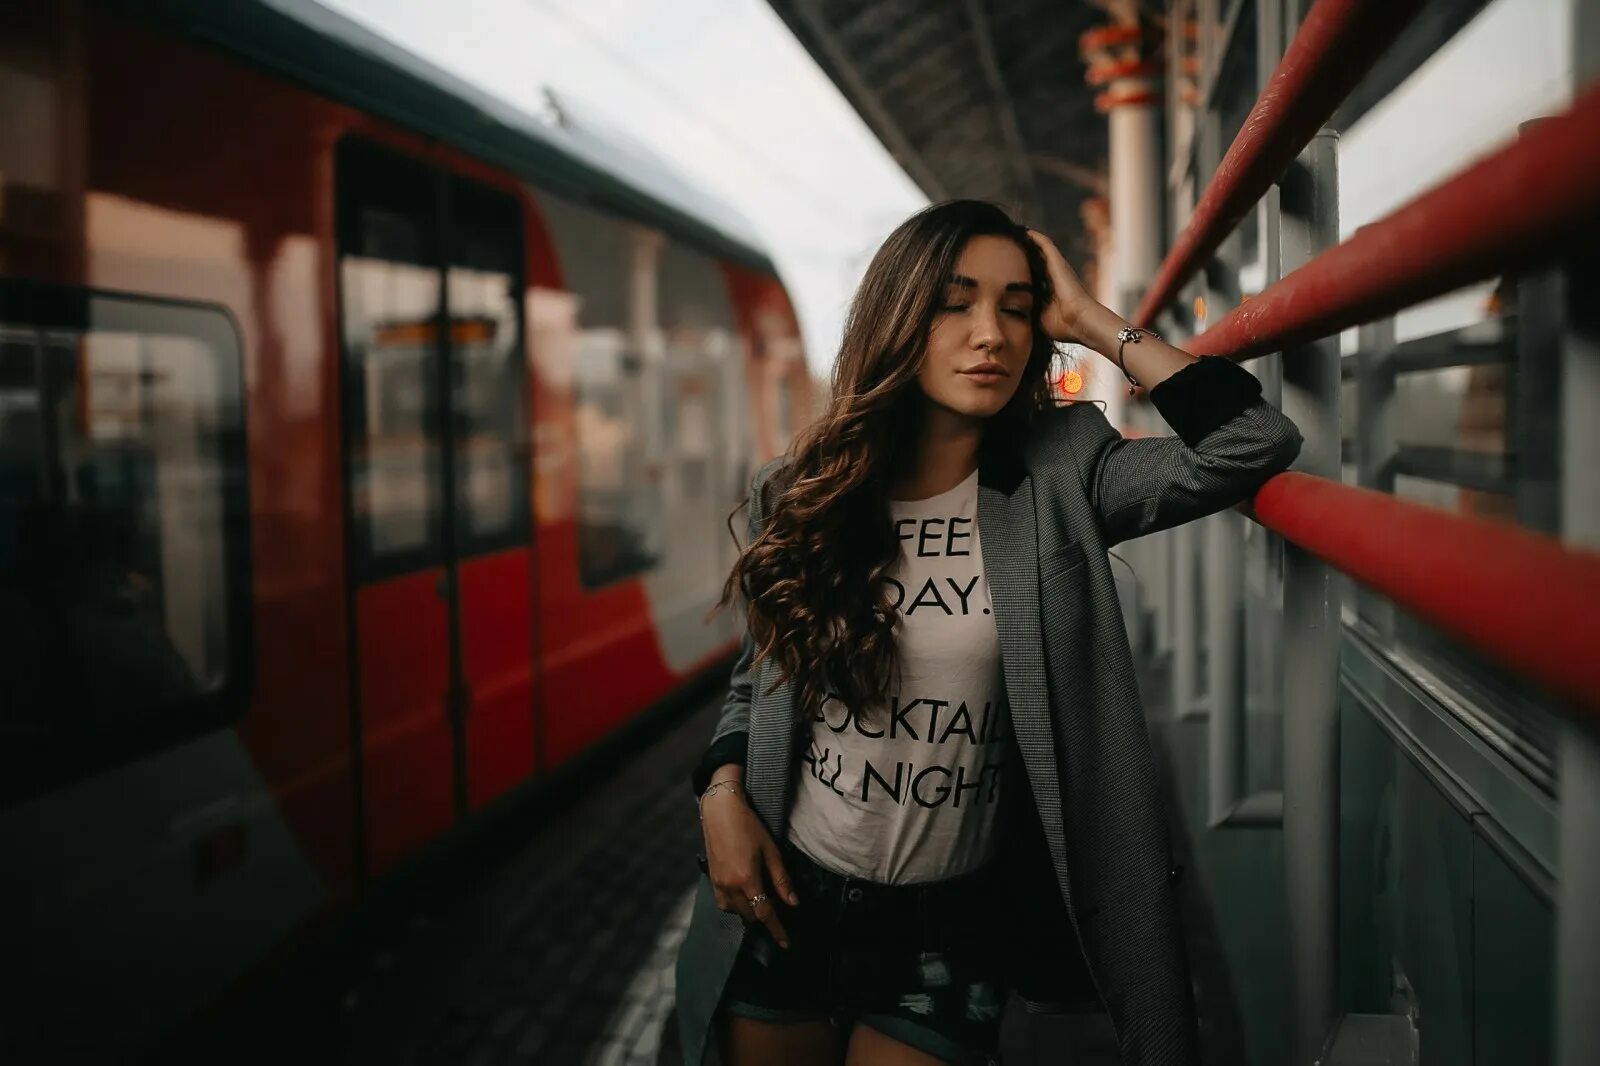 Train Station woman. Девушки в шортах в поезде. Фото смуглых поезд. Девушка в поезде в шортиках. Deep extended mix